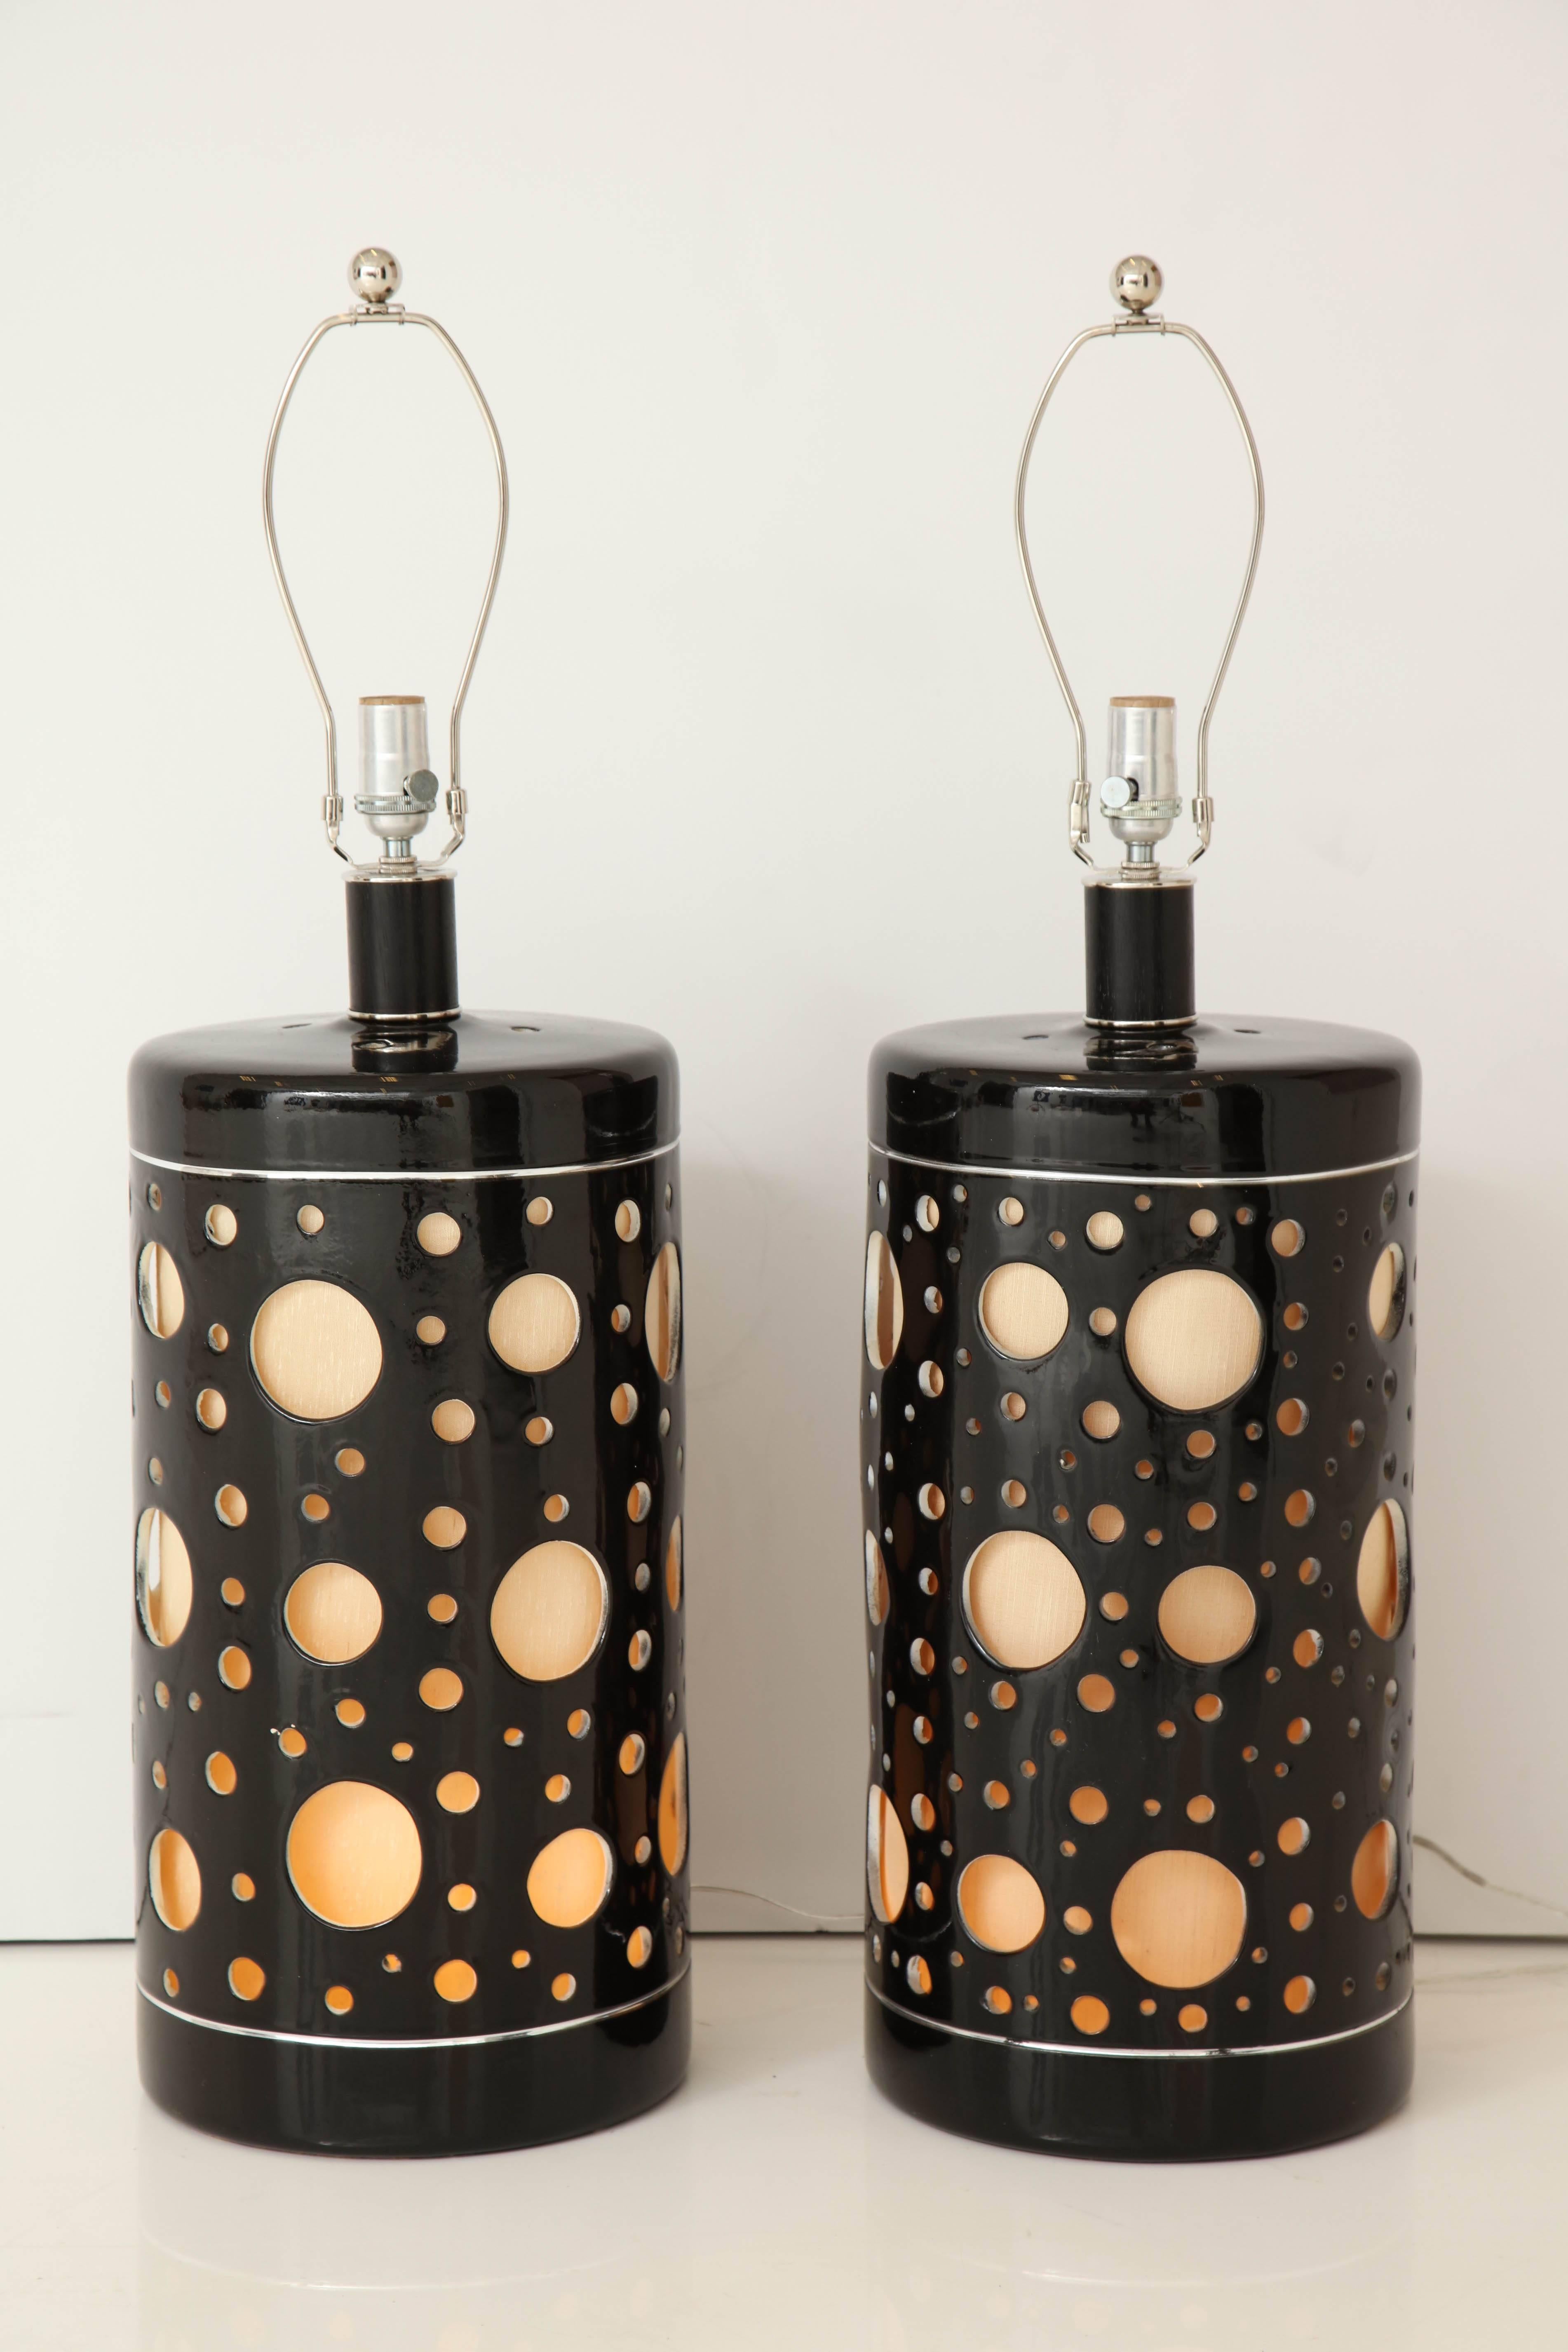 Superbe paire de lampes italiennes en céramique Iarge des années 1970.
Les corps de lampe ont des trous découpés de différentes tailles qui sont mis en valeur par l'abat-jour intérieur qui s'illumine.
Ils ont été récemment recâblés pour les